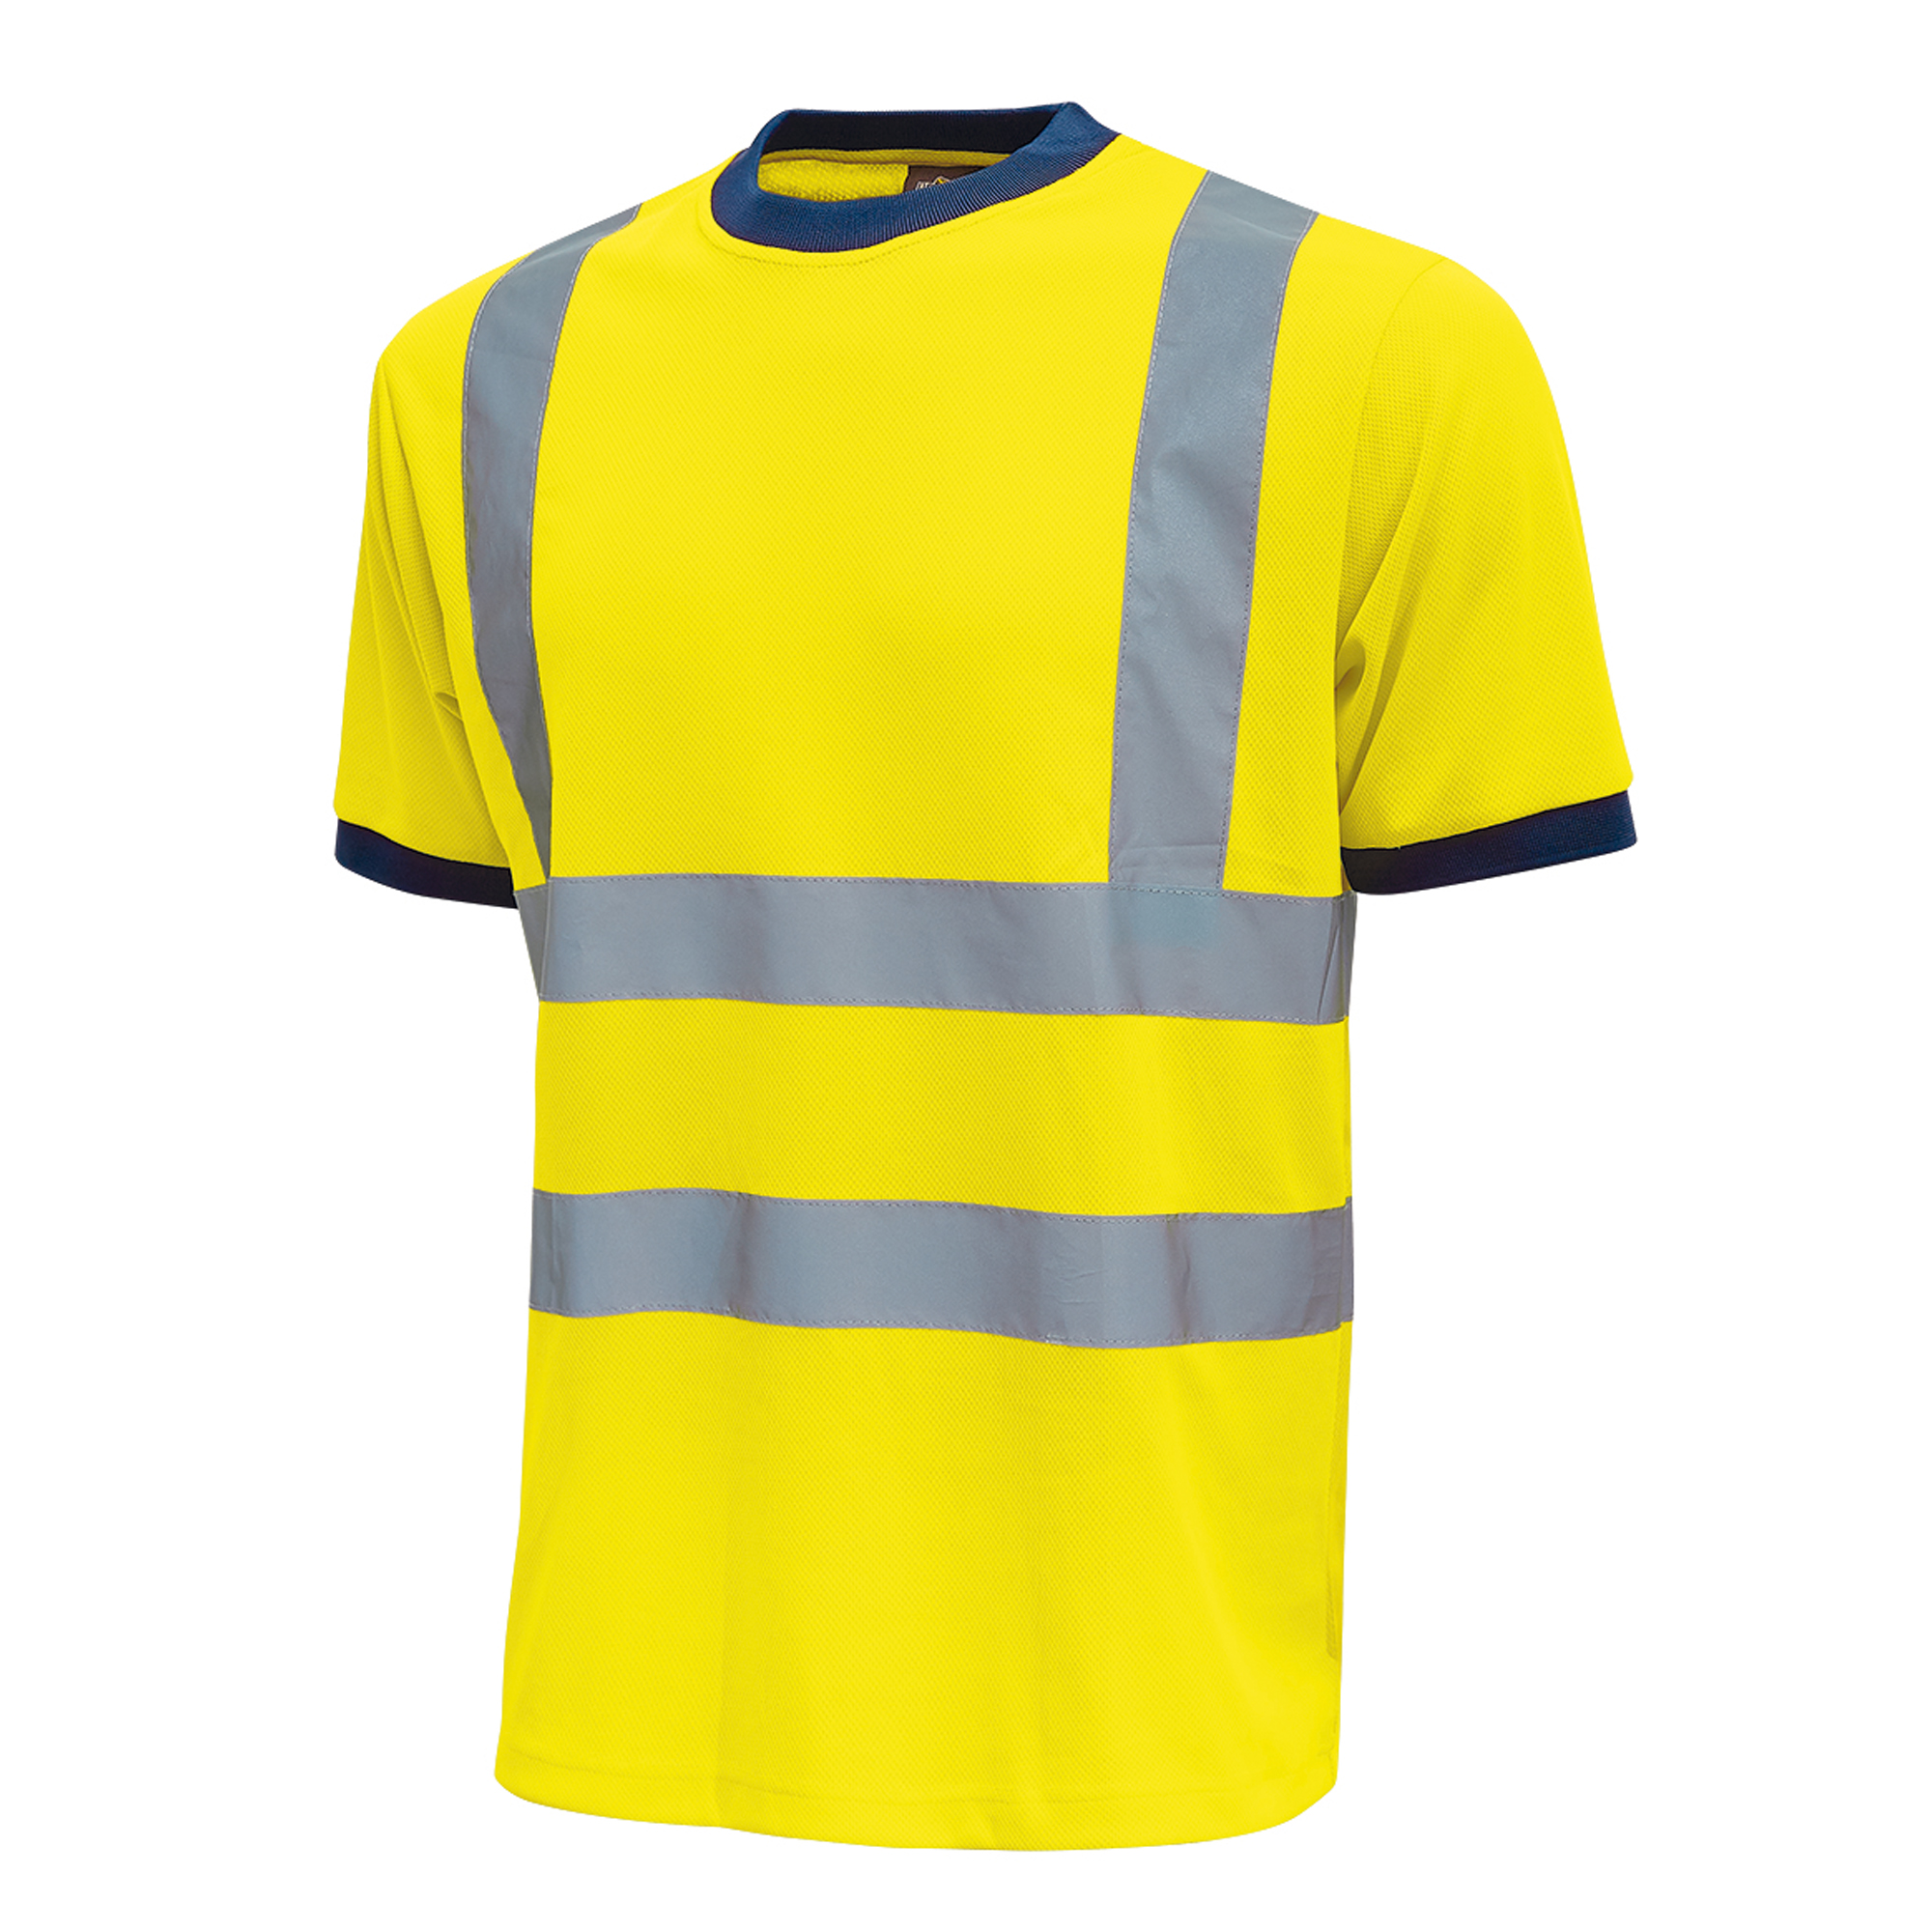 T-shirt alta visibilitA' Glitter - taglia M - giallo fluo - U-Power - conf. 3 pezzi